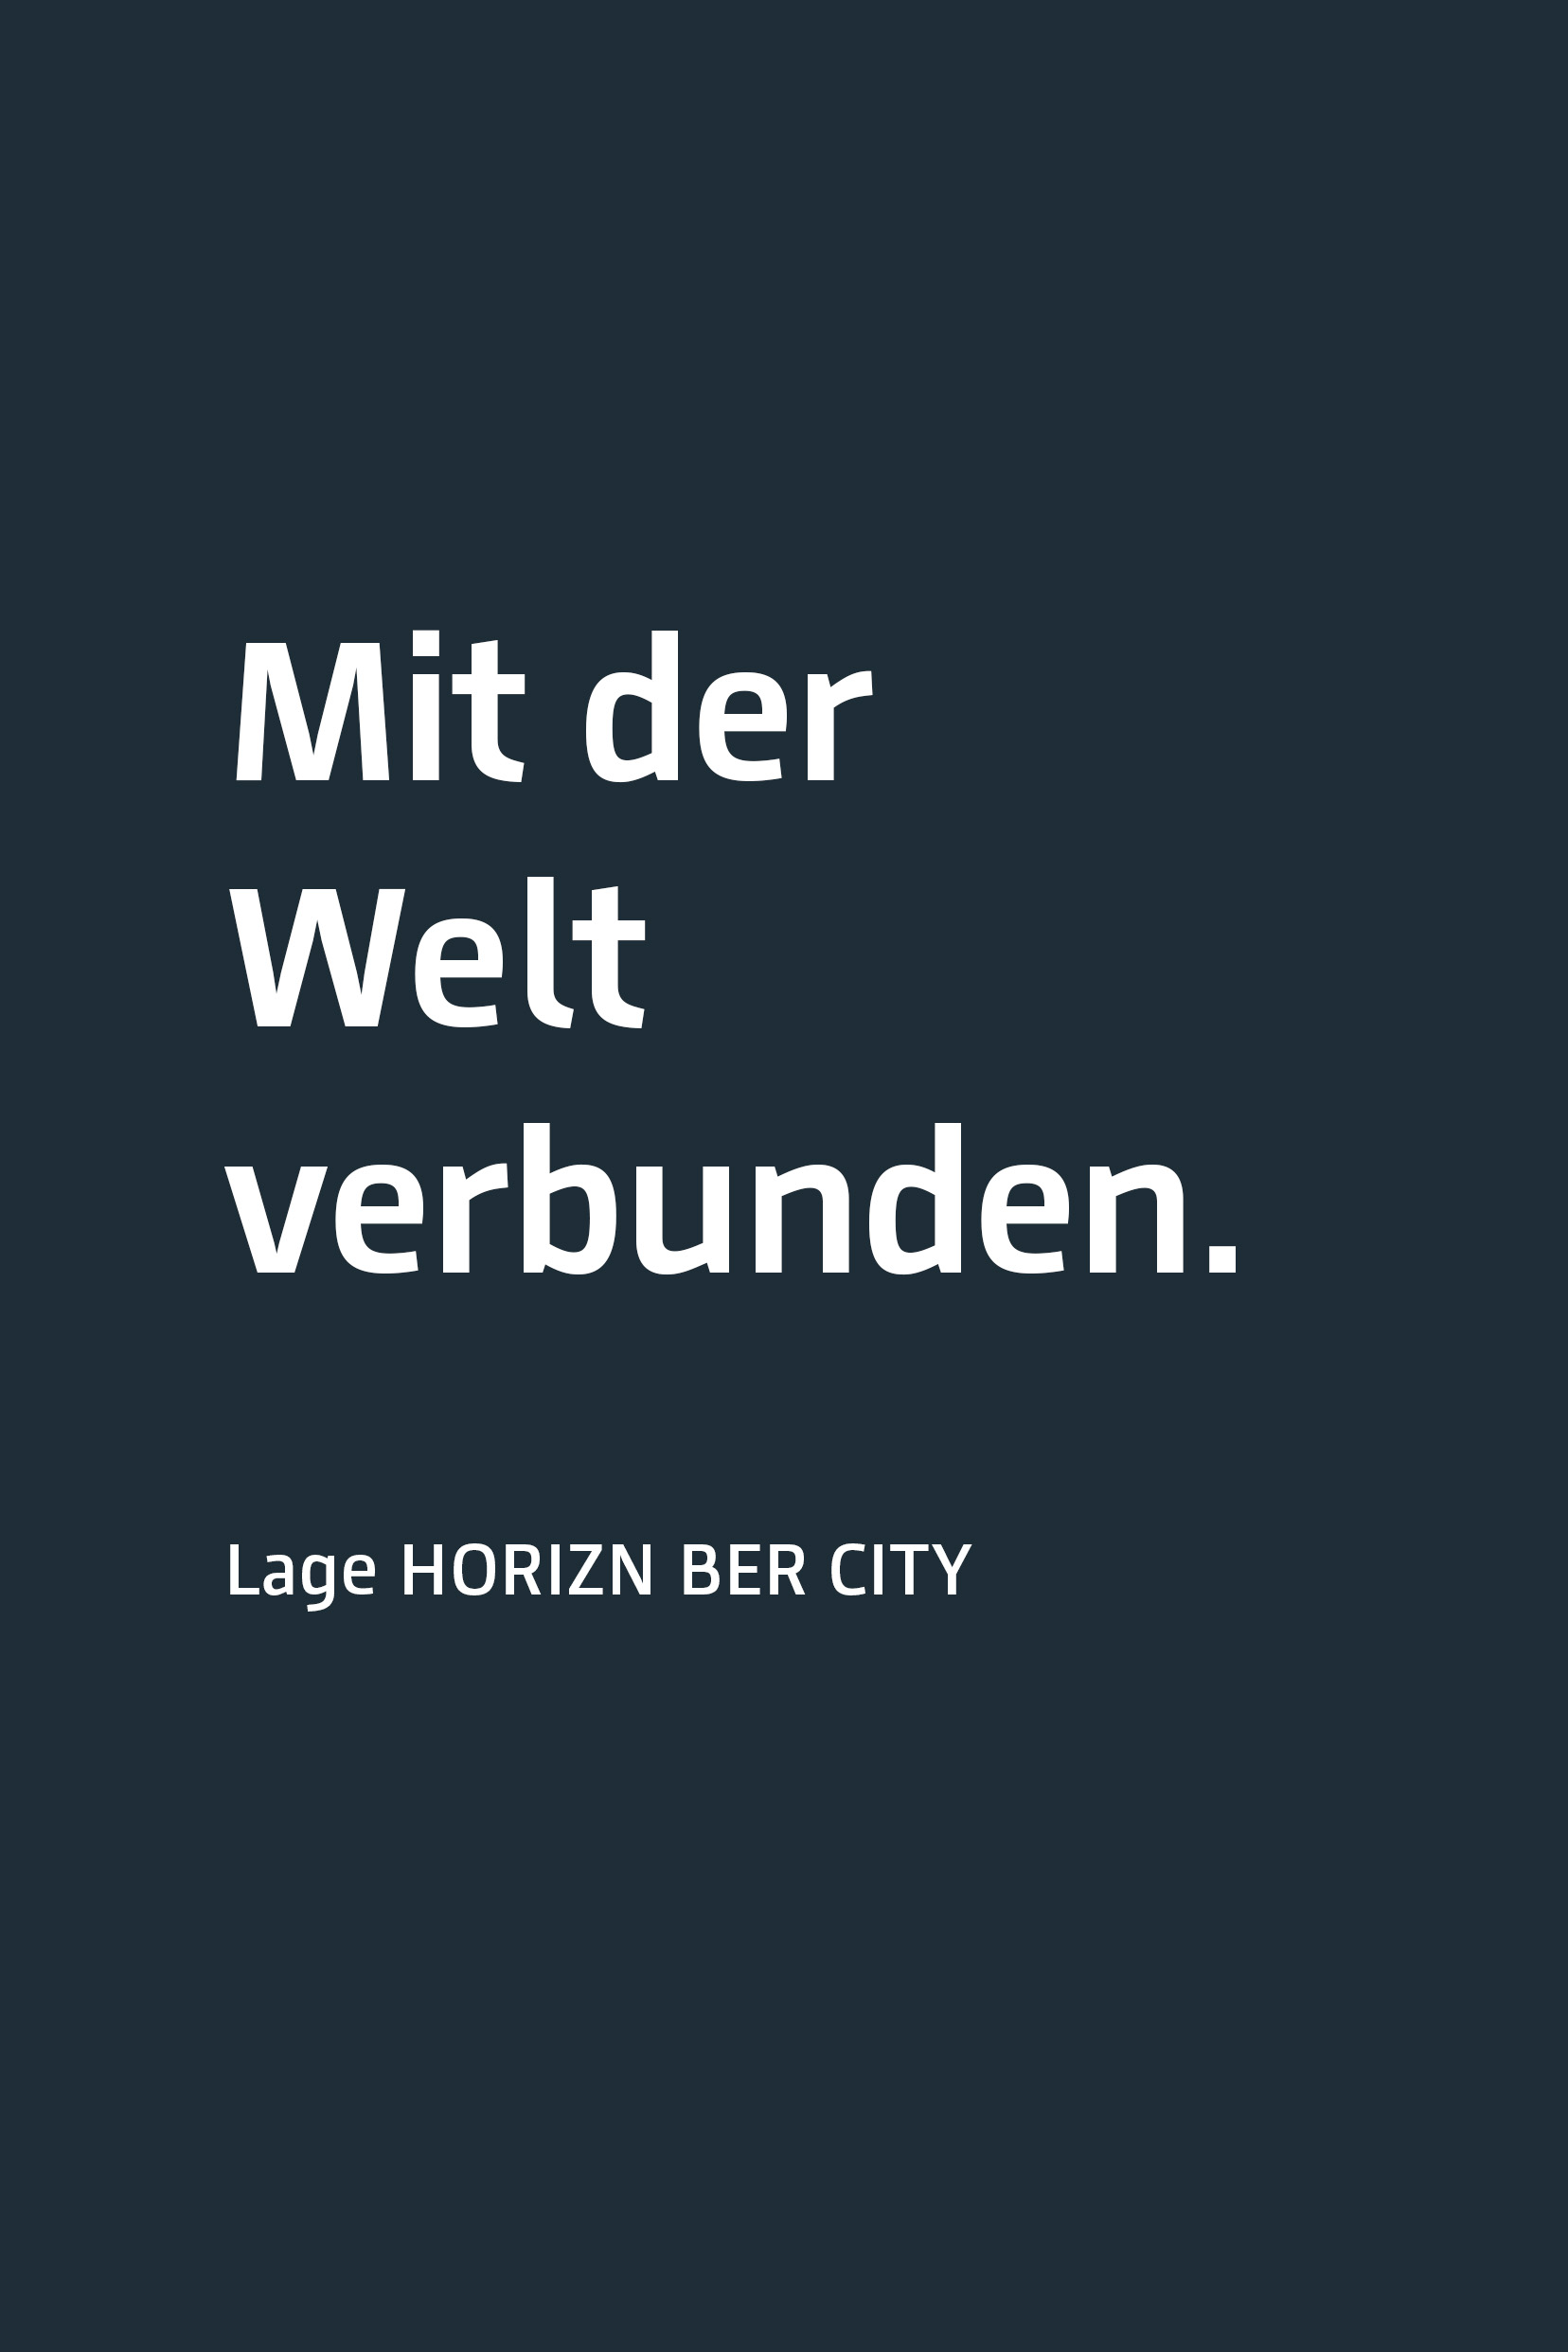 Anthrazite Fläche mit der Aufschrift "Mit der Welt verbunden. Lage HORIZN BER City"